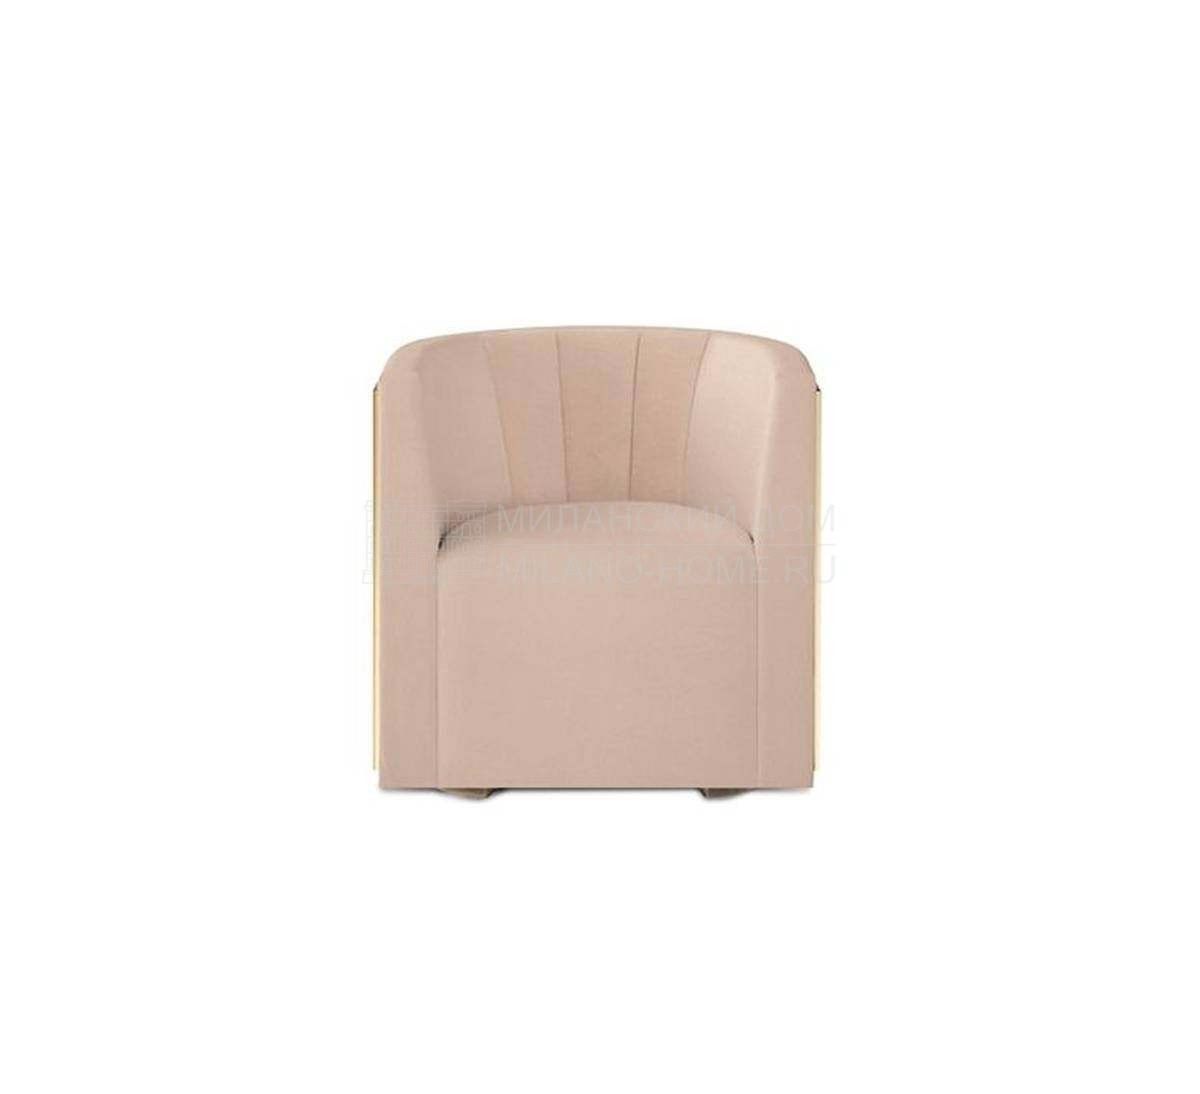 Круглое кресло Grace/armchair из Португалии фабрики DELIGHTFULL